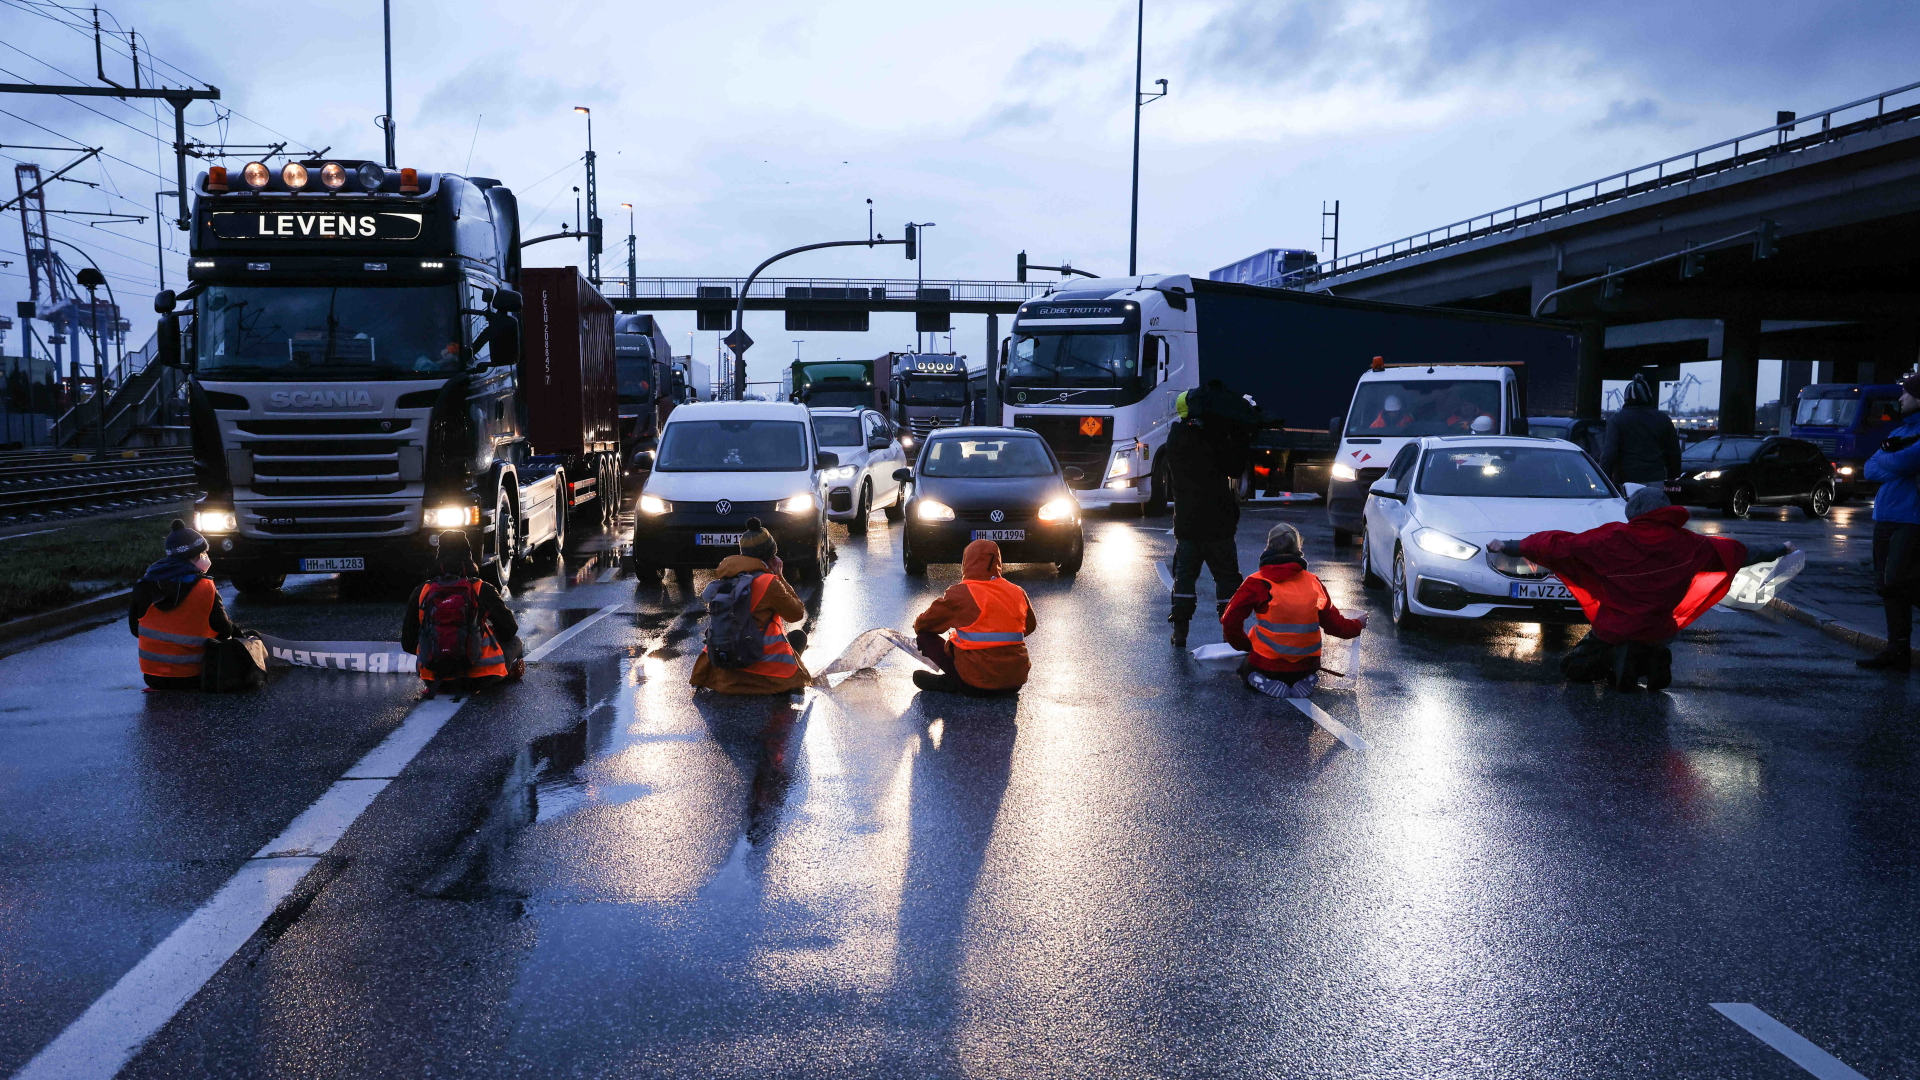 Klimaaktivisten der Aktion "Aufstand der letzten Generation" blockieren am 21. Februar 2022 in Hamburg eine Kreuzung zur Köhlbrandbrücke und zur Autobahn A7 | dpa